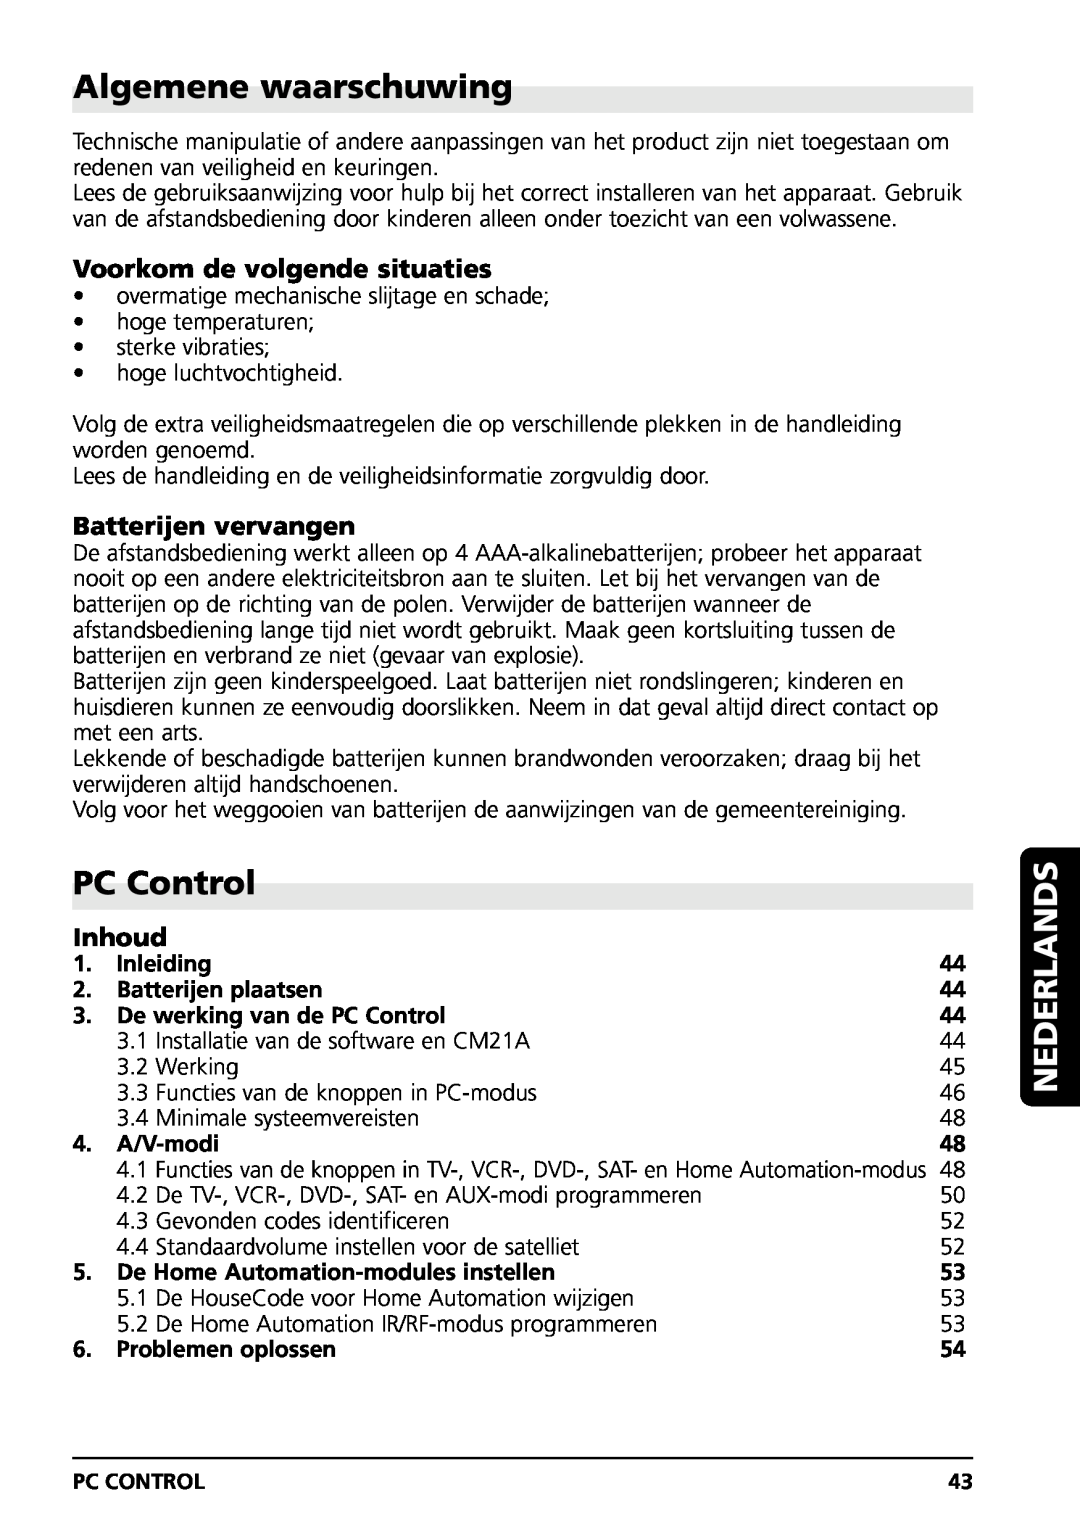 Marmitek PC CONTROL Algemene waarschuwing, PC Control, Nederlands, Voorkom de volgende situaties, Batterijen vervangen 